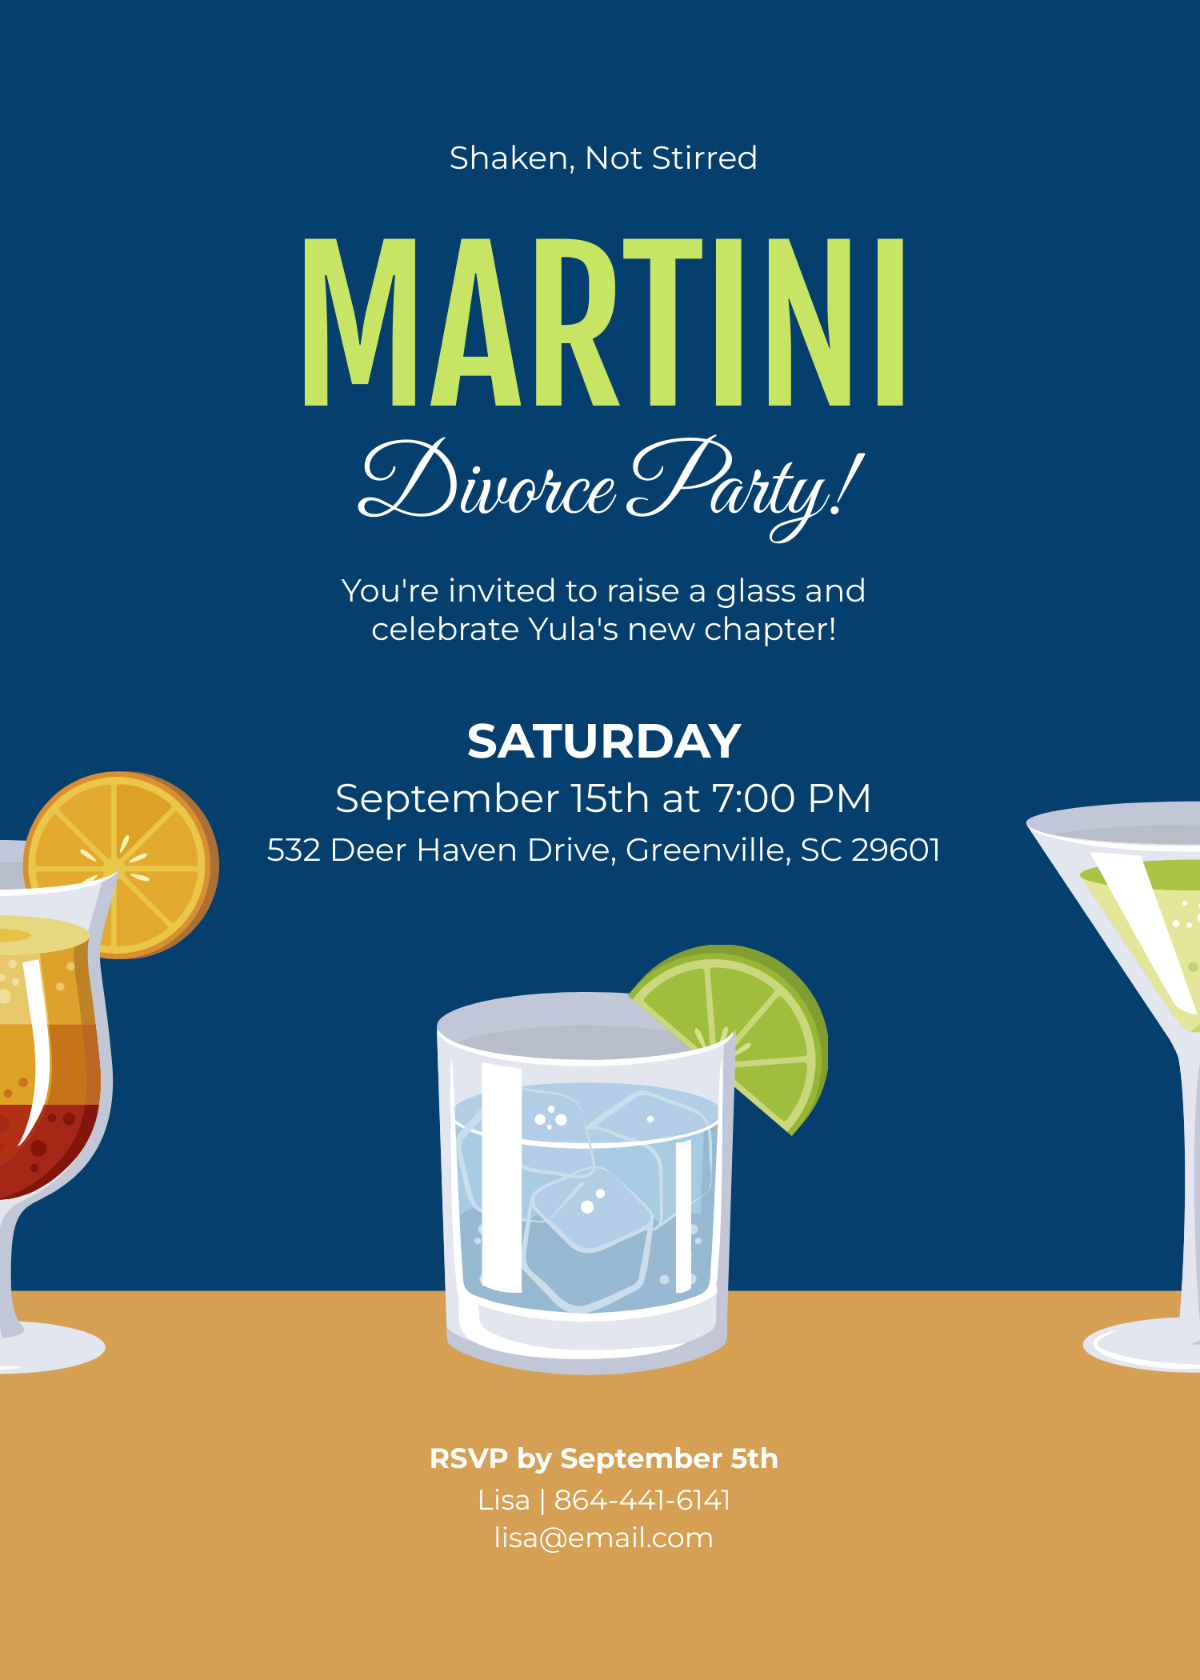 Martini Divorce Party Invitation